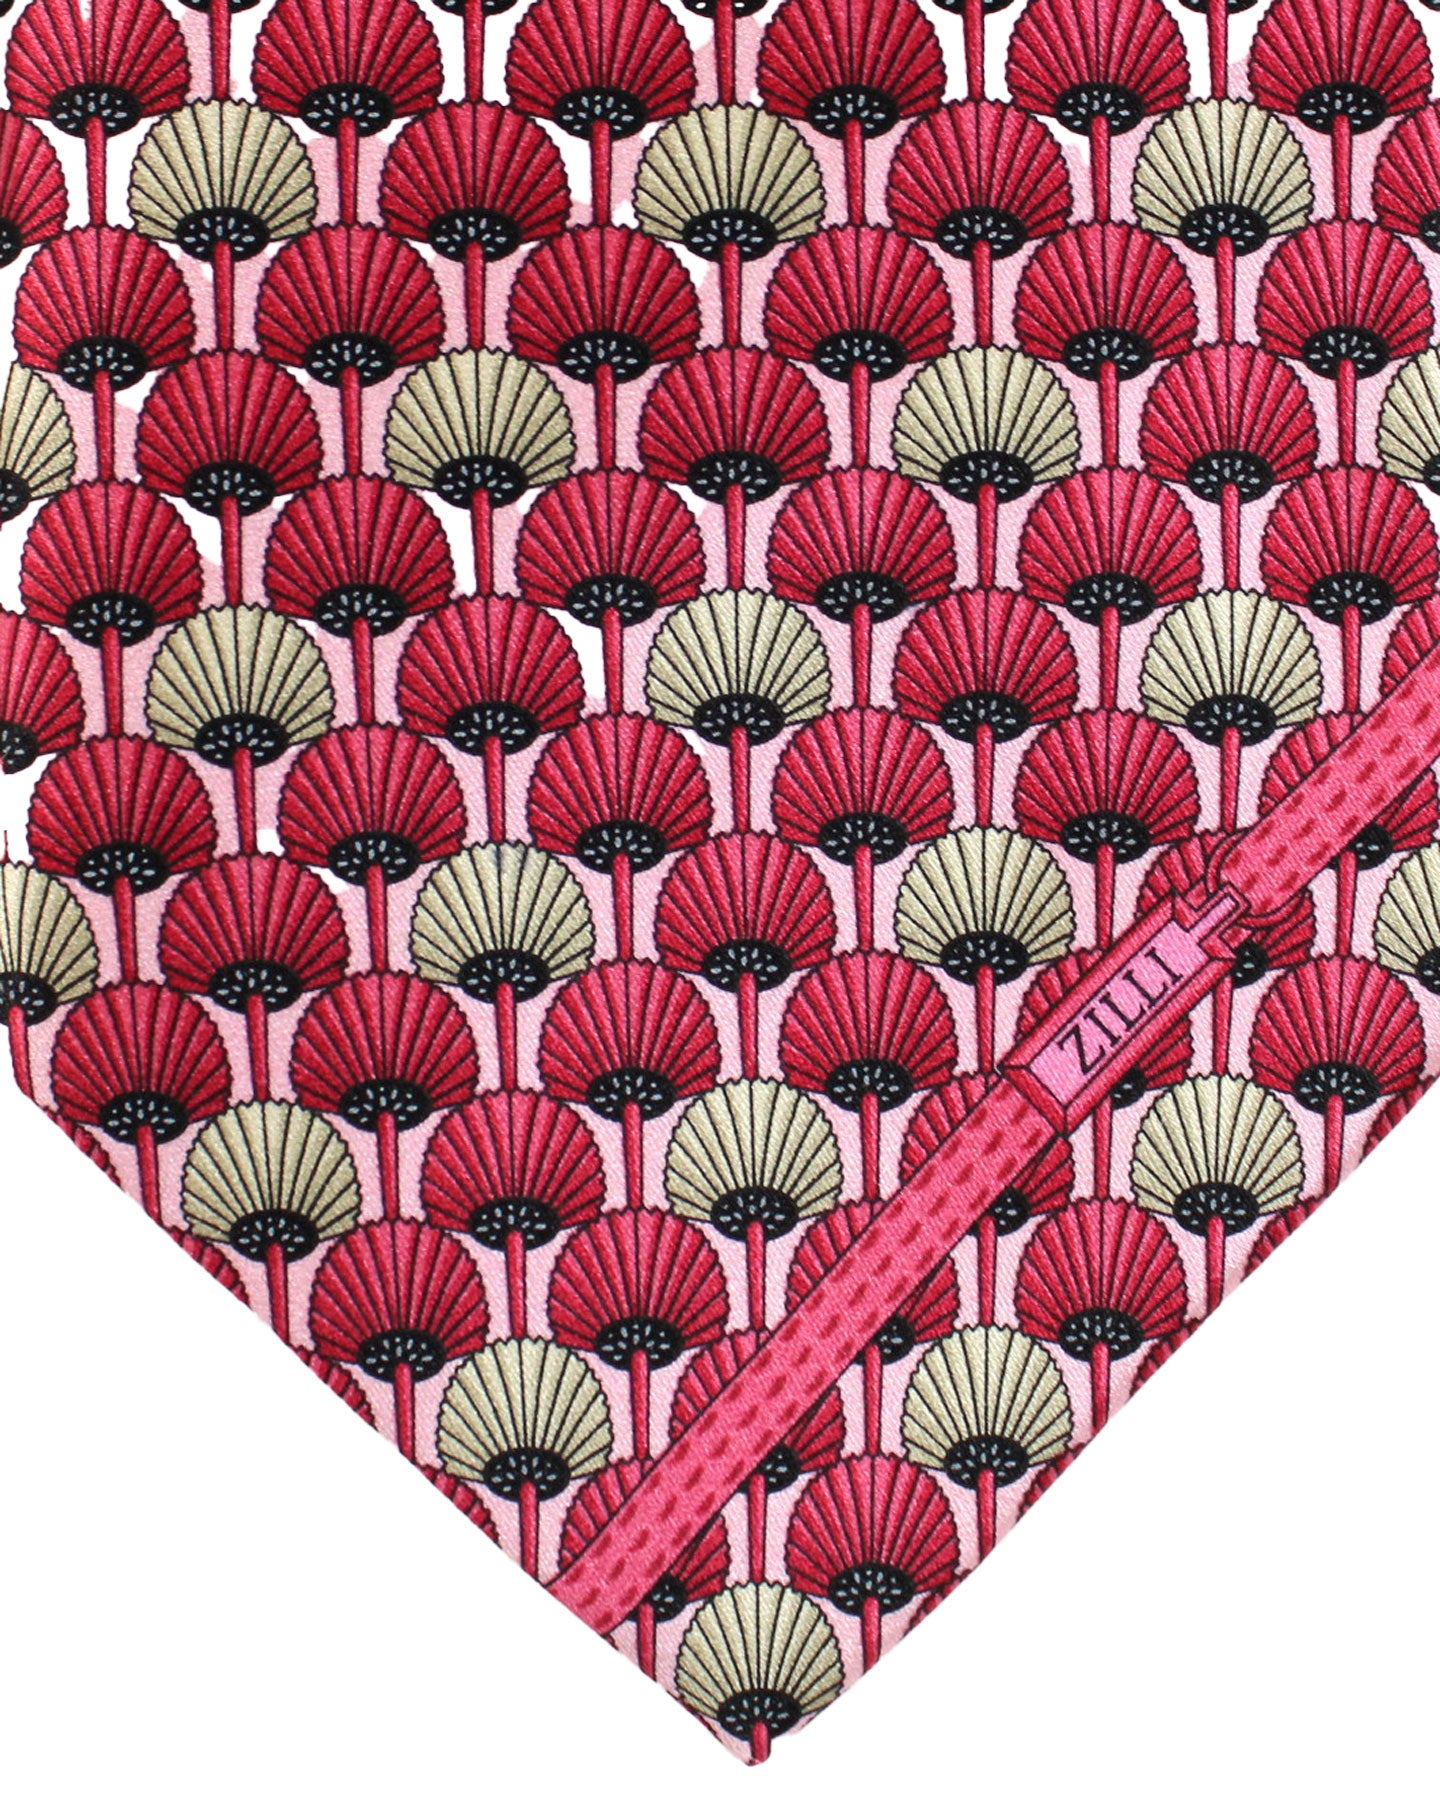 Zilli Silk Tie Pink Floral - Wide Necktie